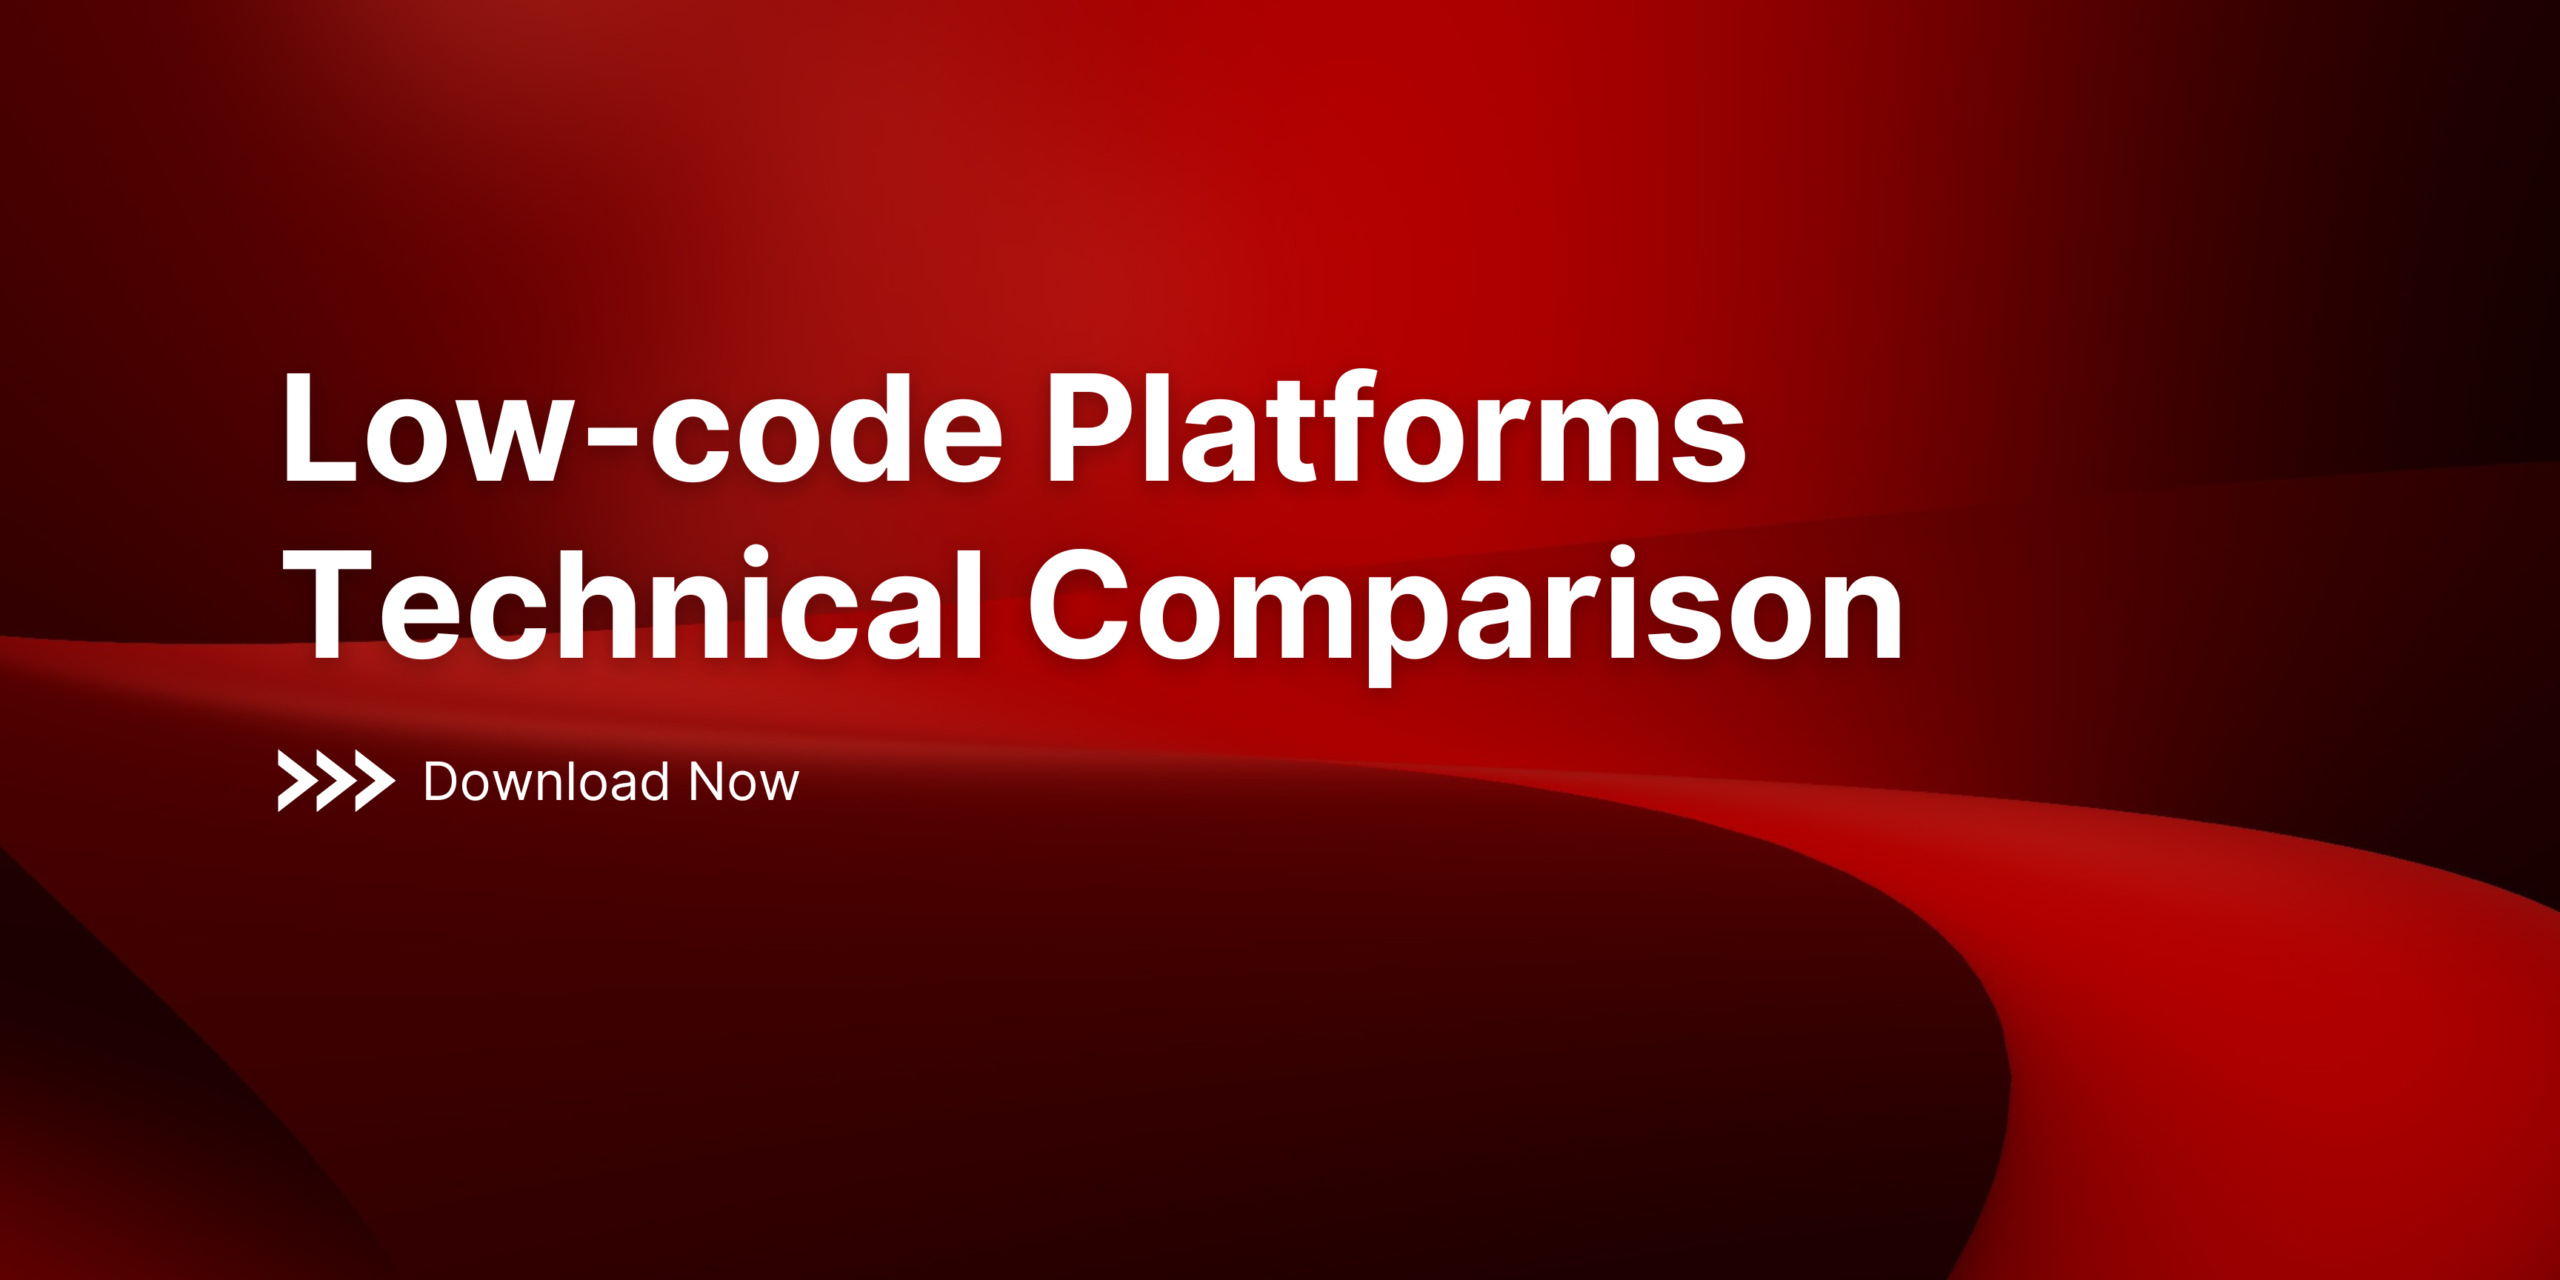 Low-code Platforms Technical Comparison